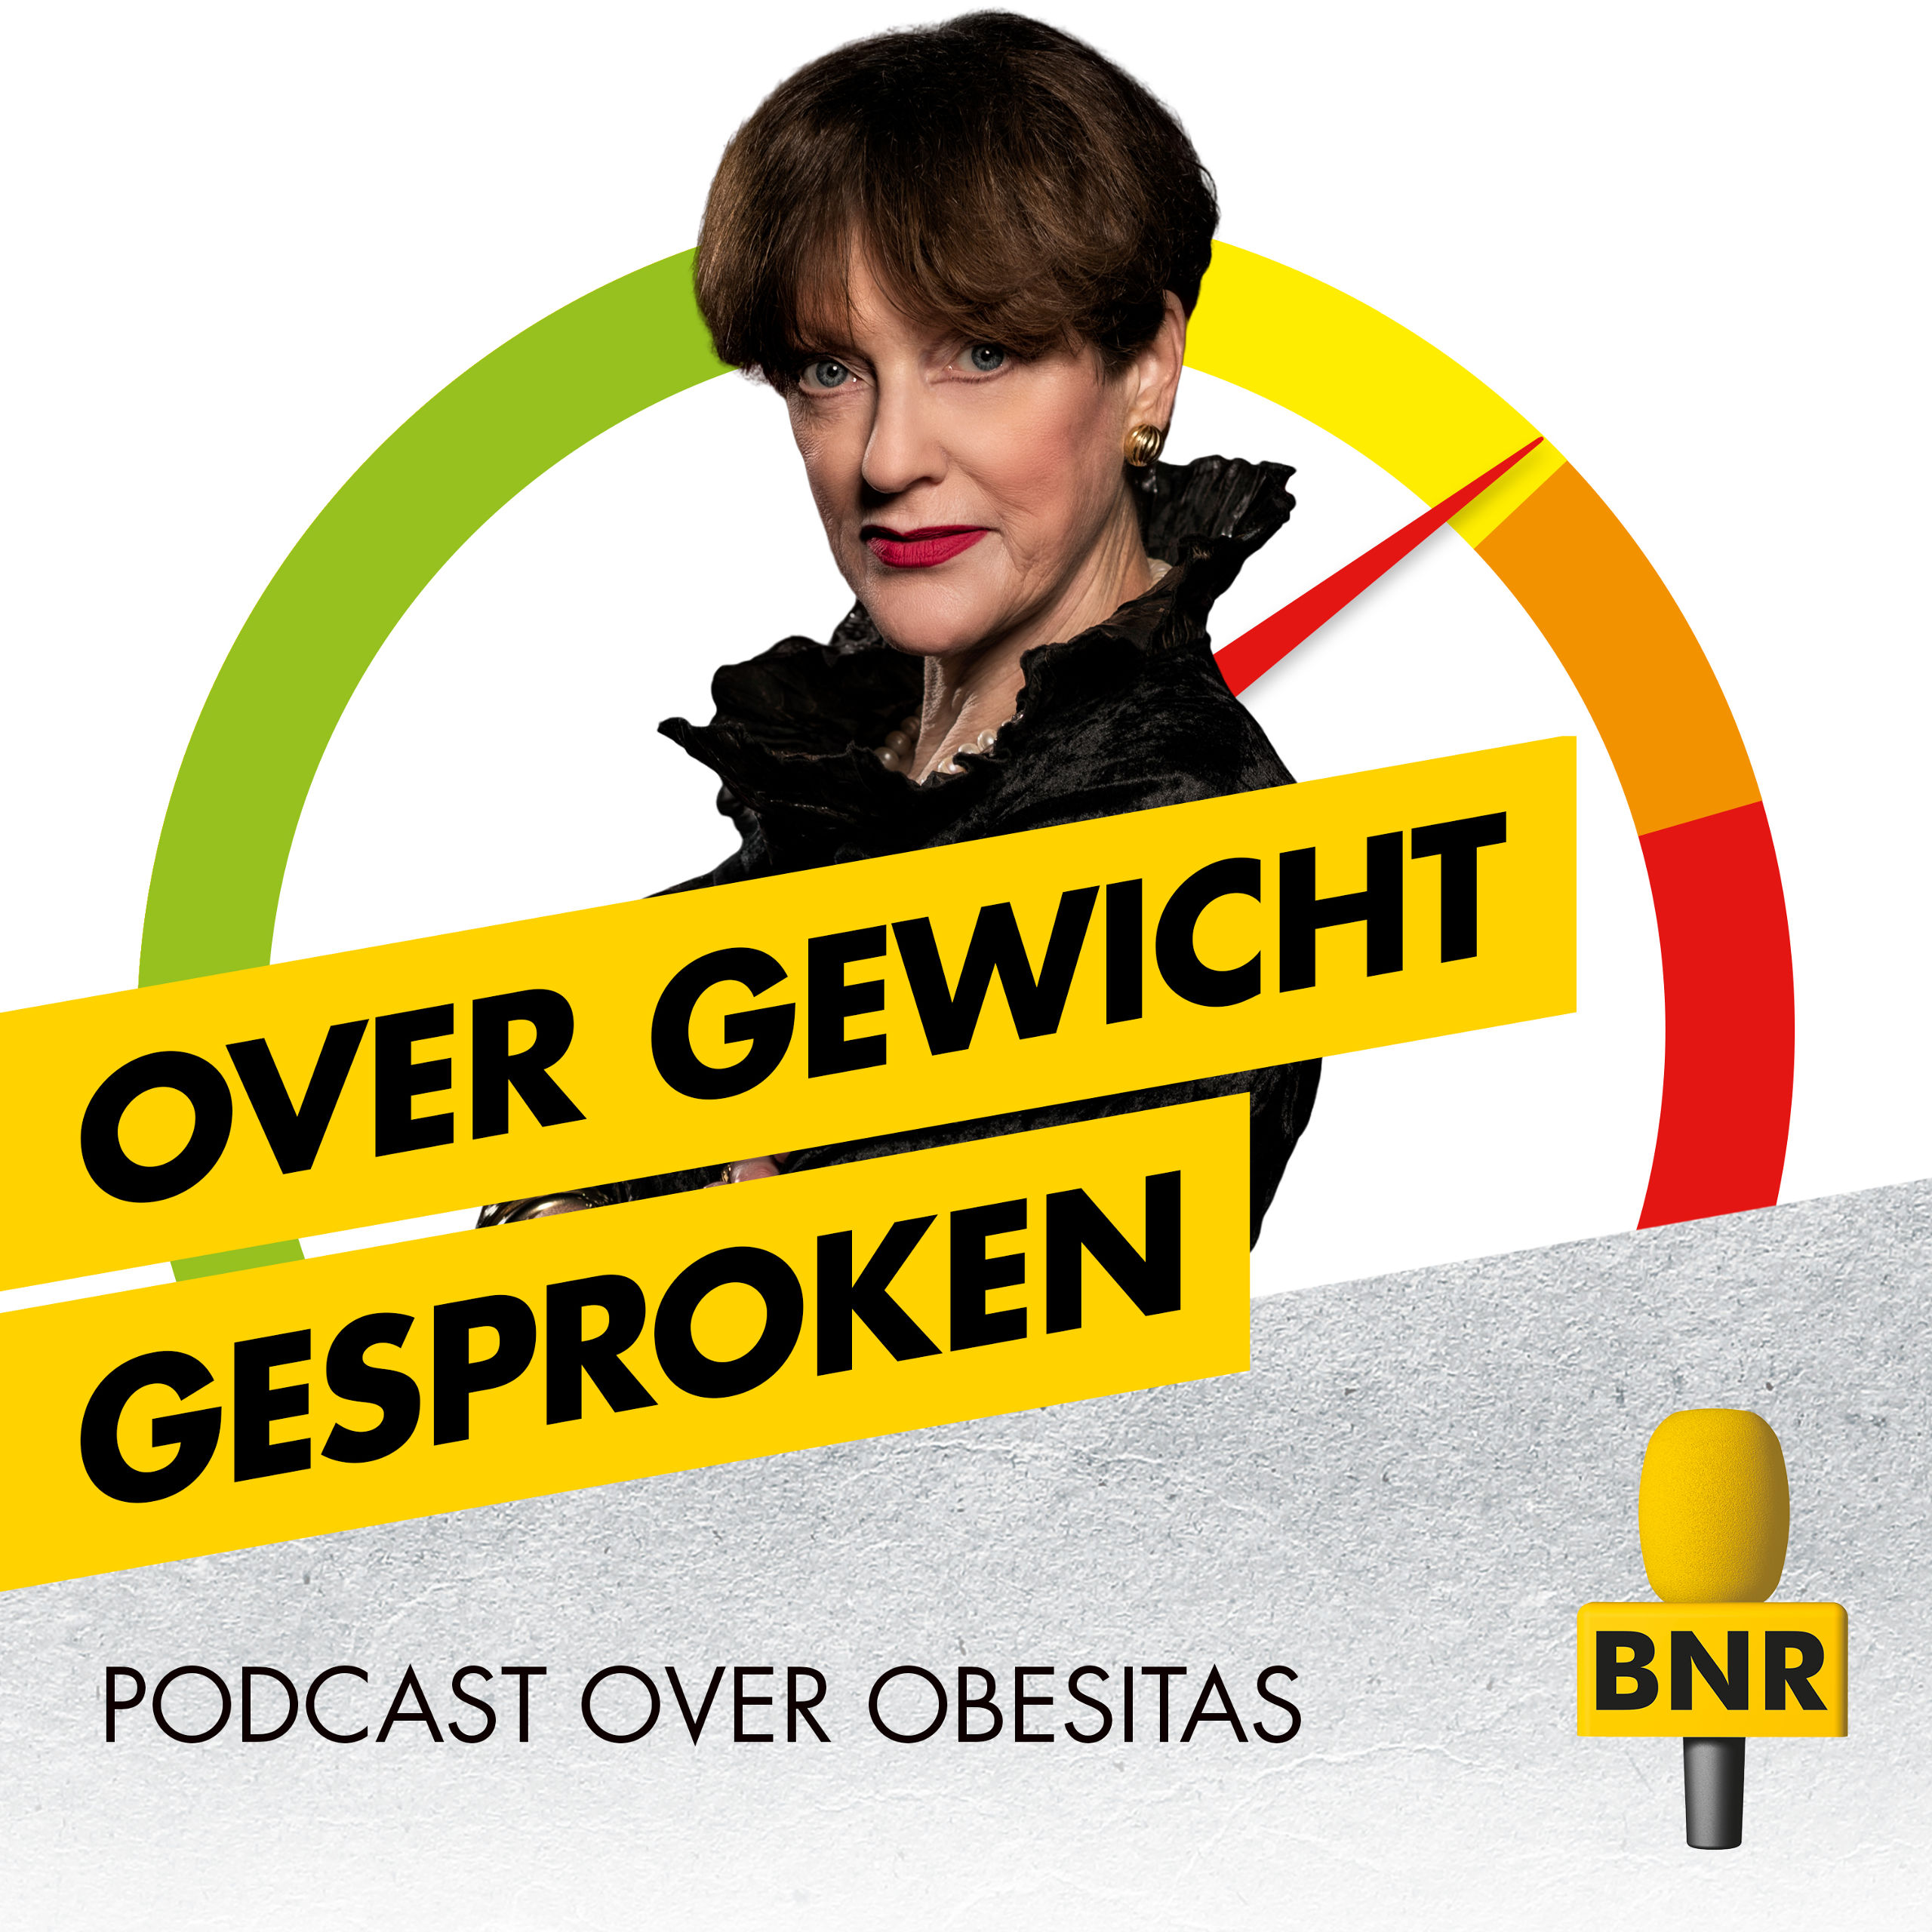 Over Gewicht Gesproken, de podcast over obesitas